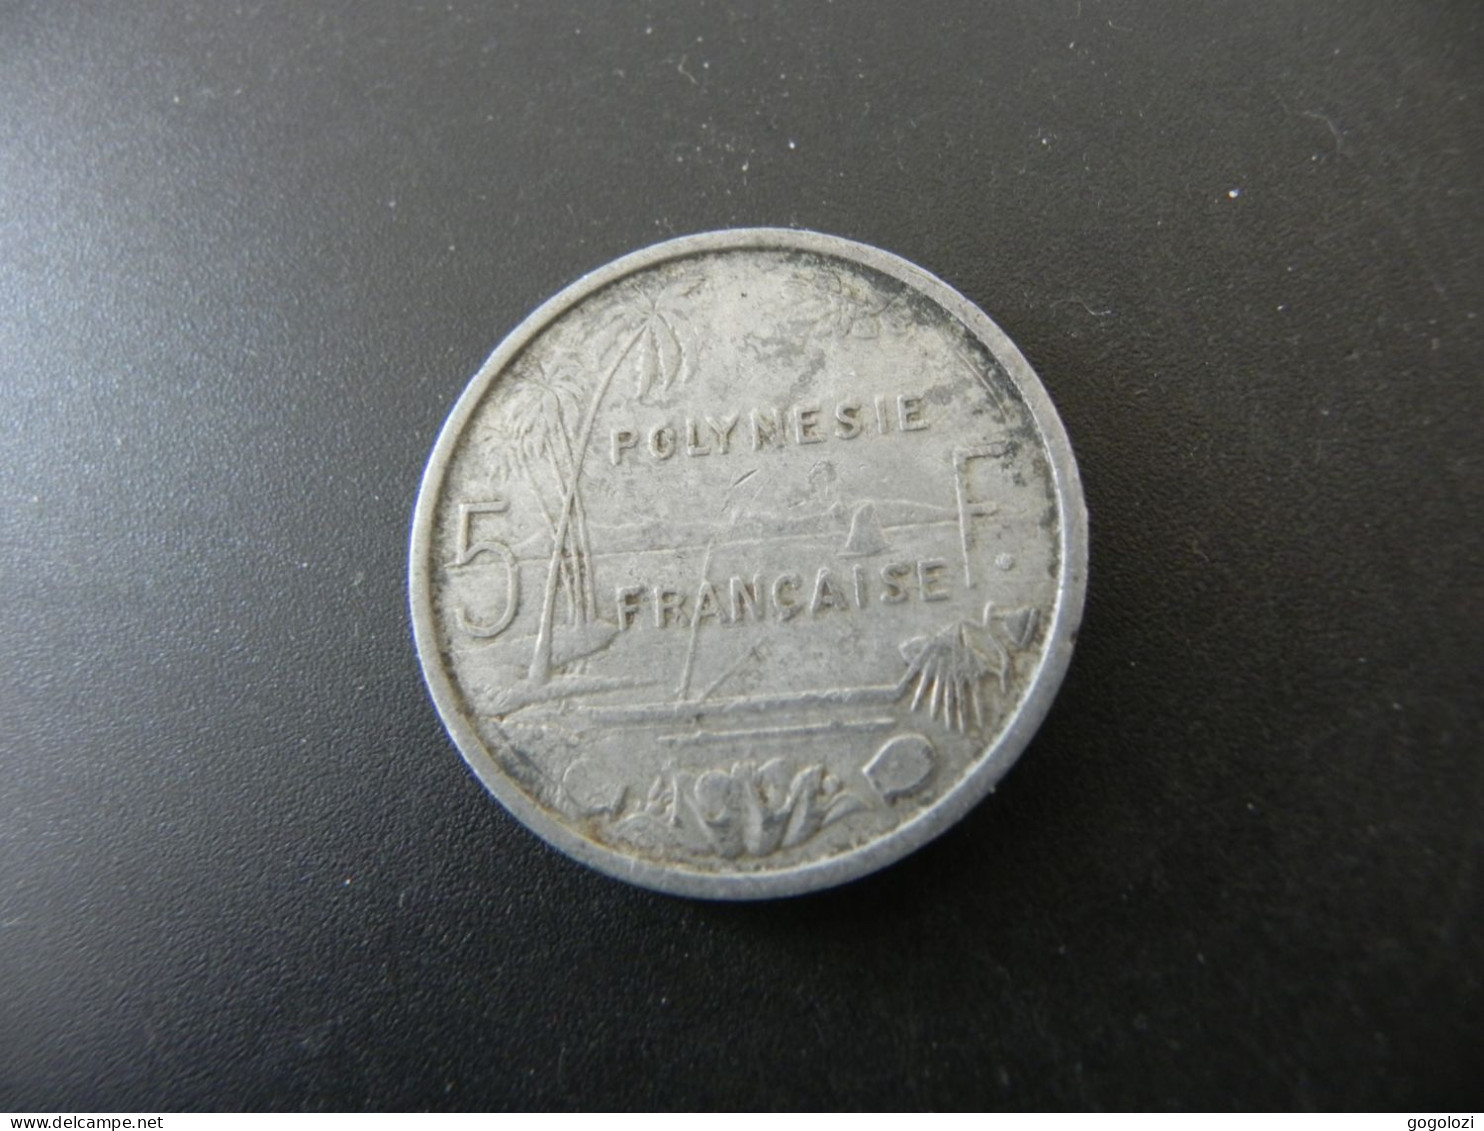 Polynesie Française 5 Francs 1965 - French Polynesia